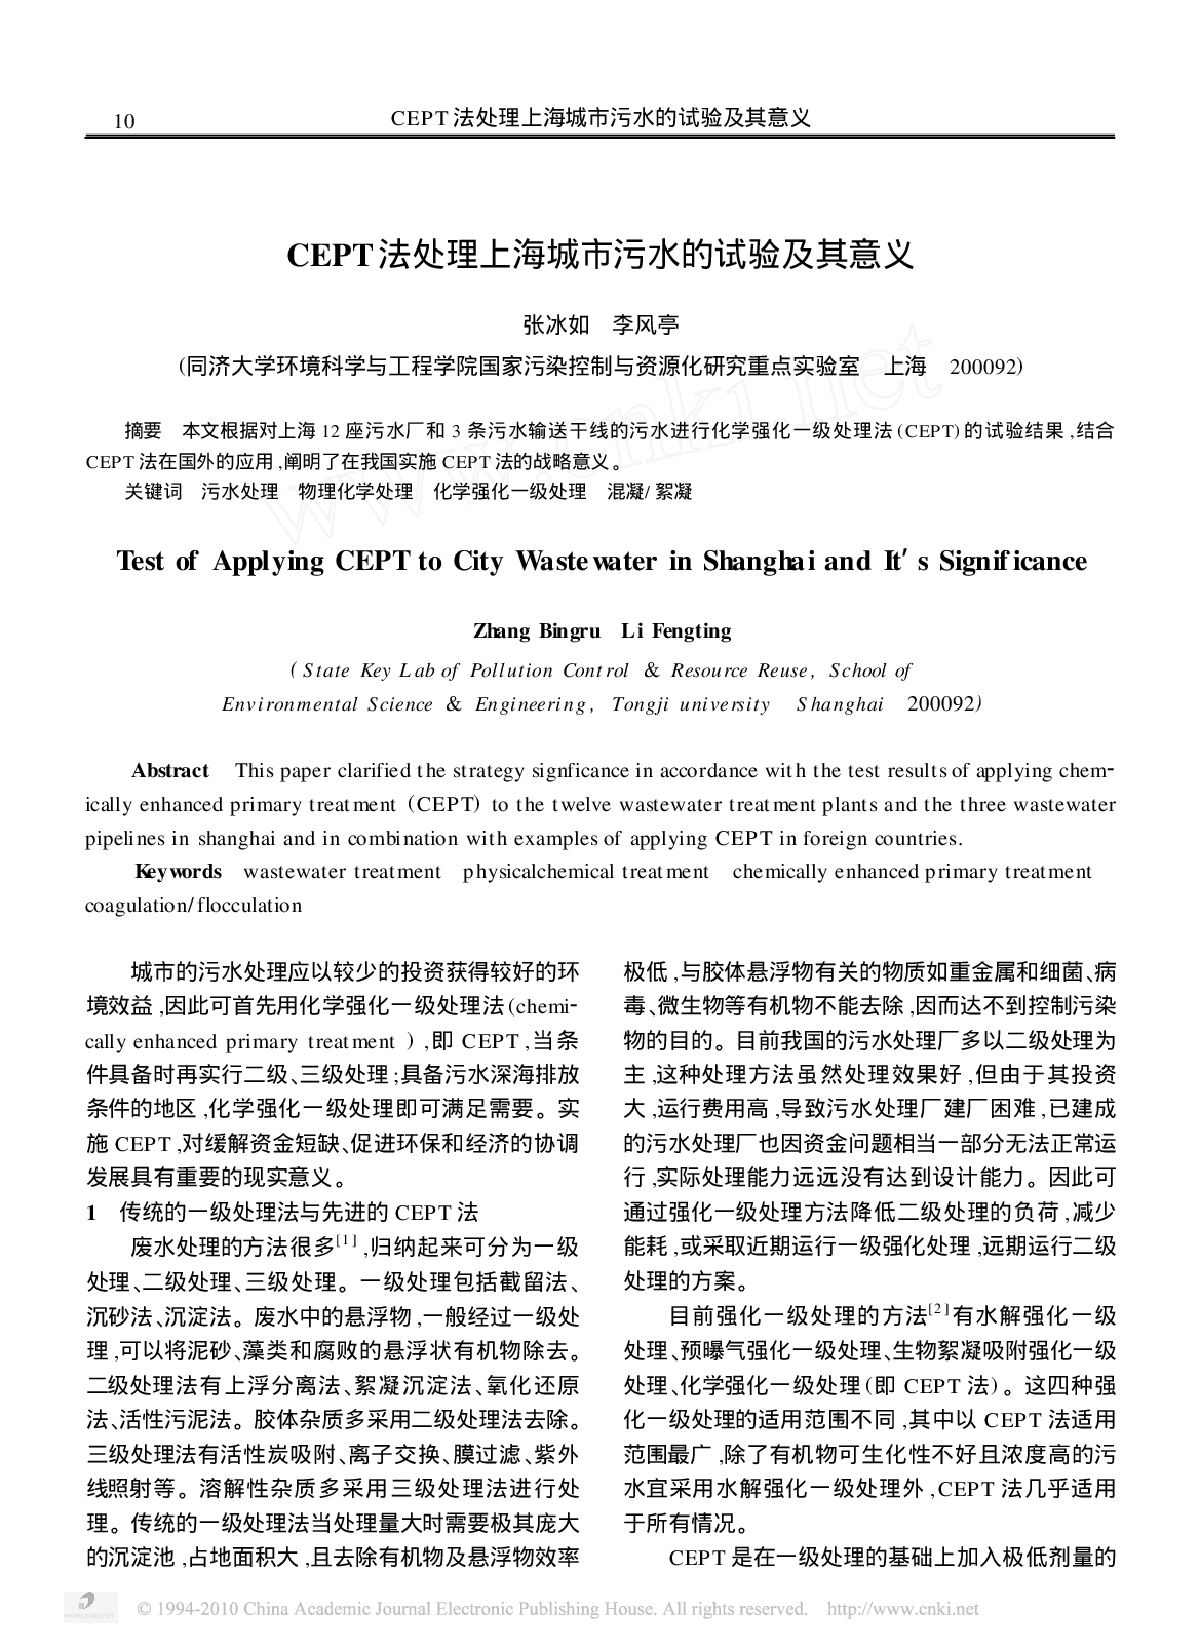 CEPT法处理上海城市污水的试验及其意义-图一